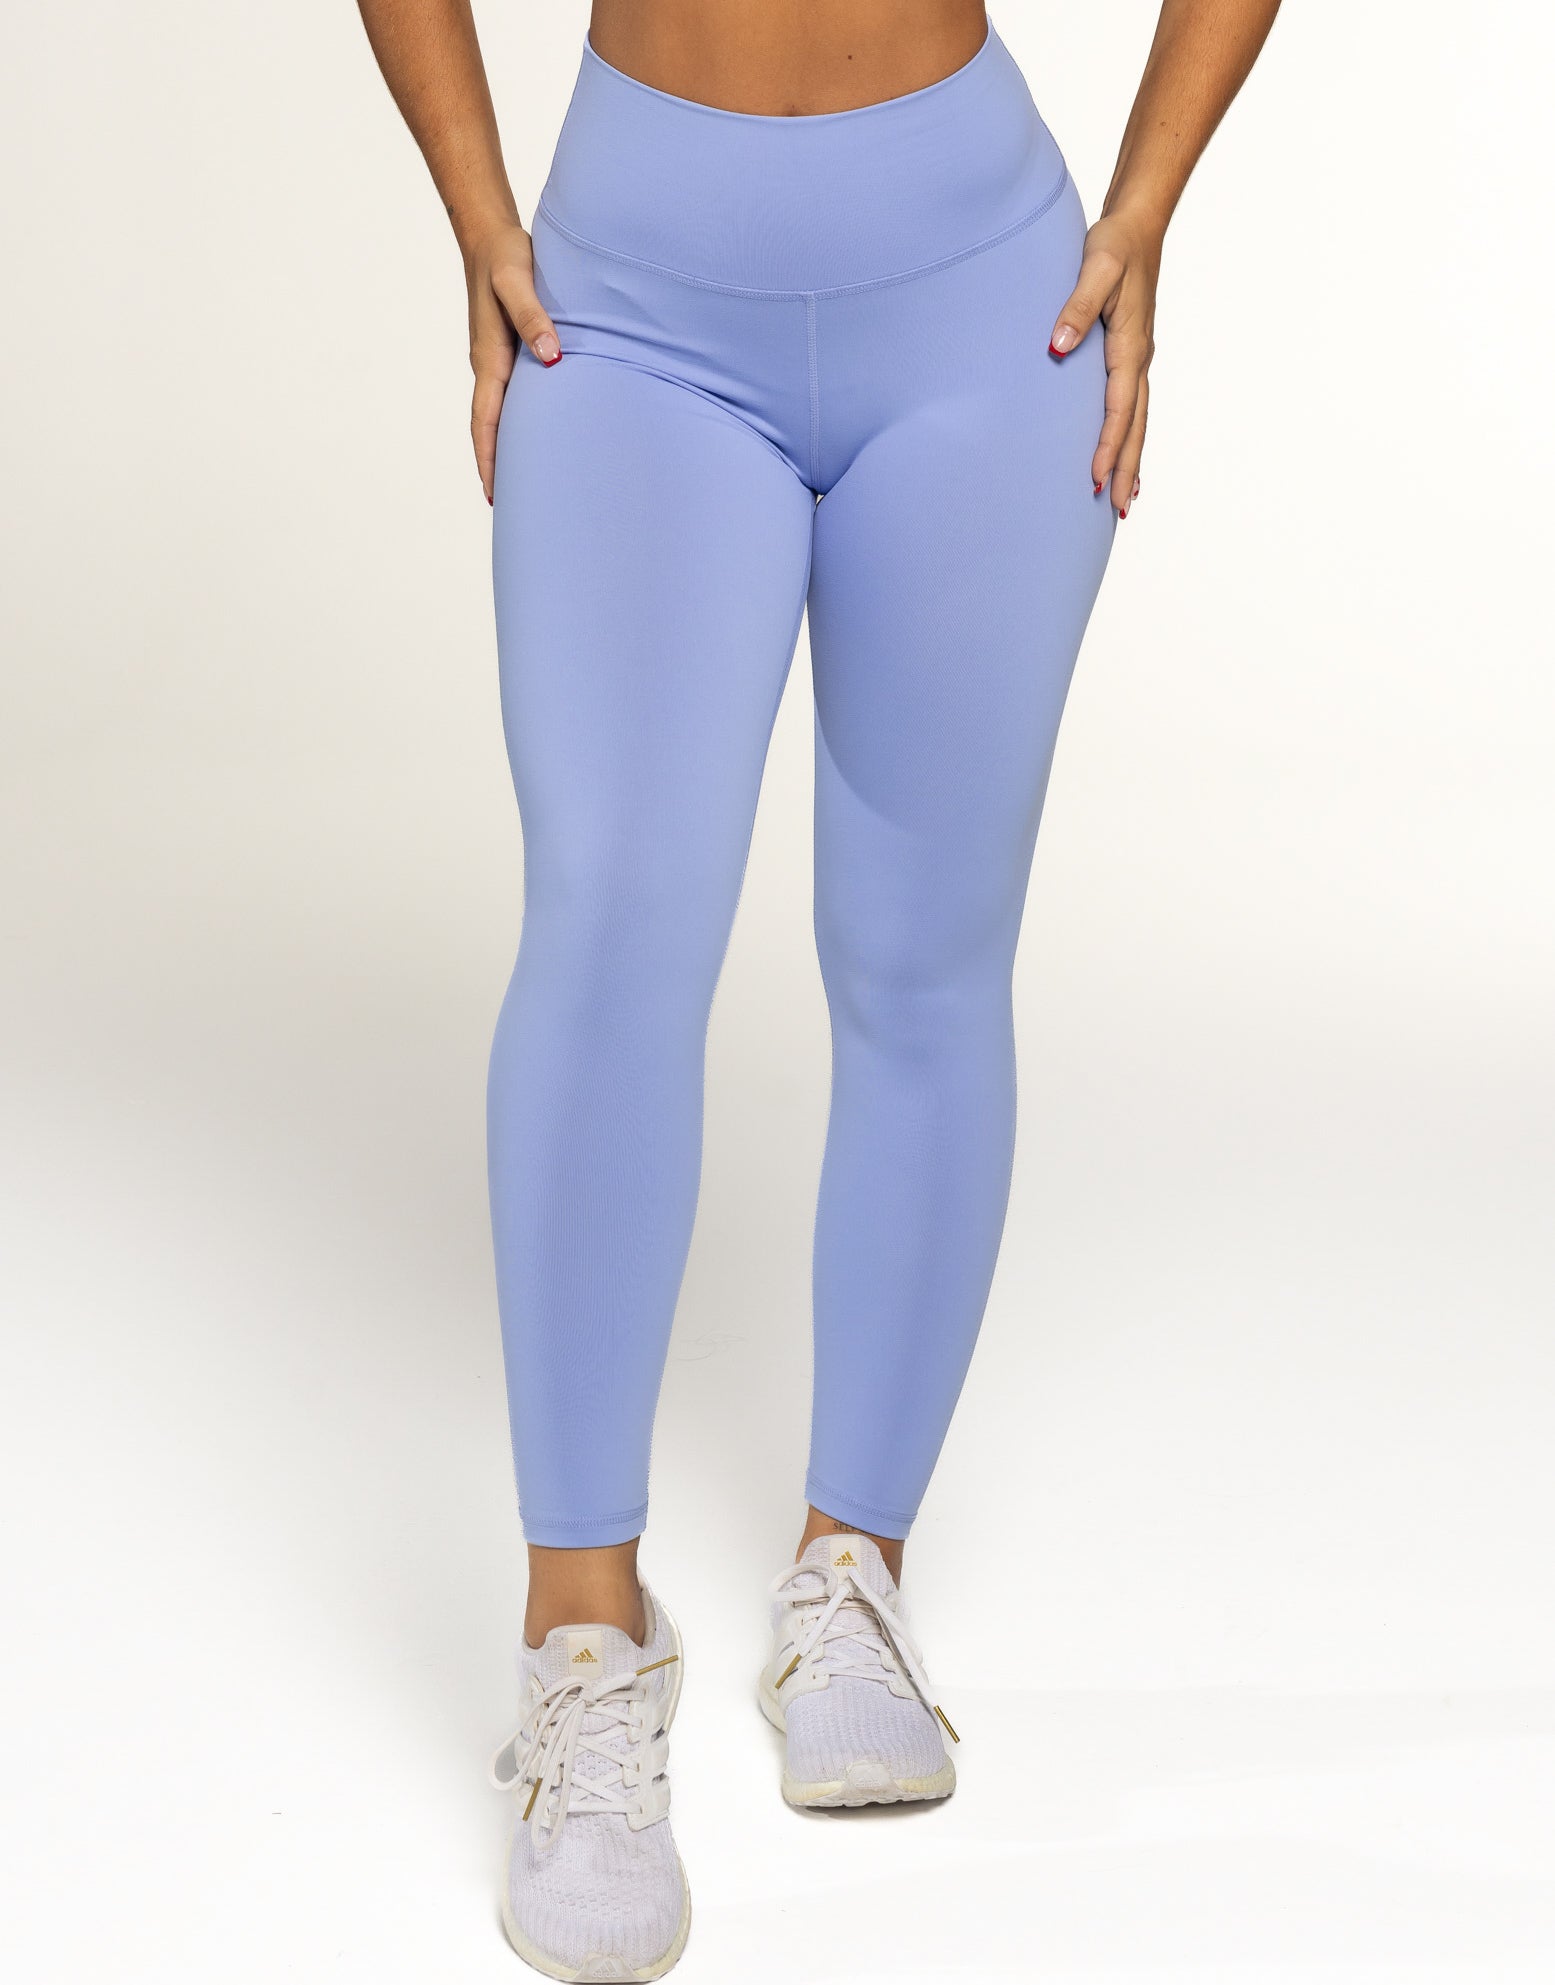 ECHT apparel scrunch leggings in blue steel. Very - Depop